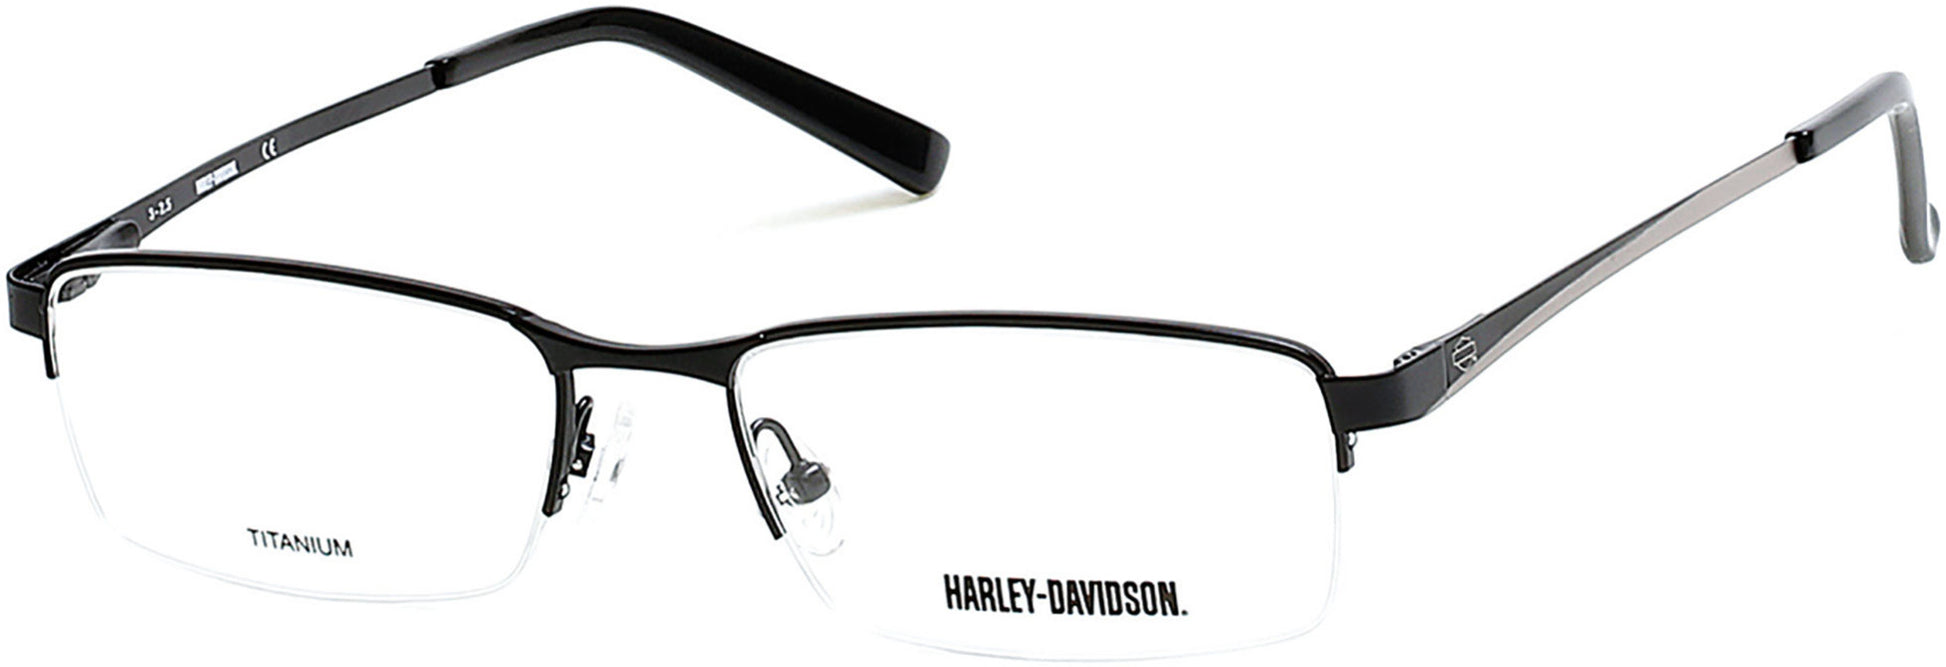 Harley-Davidson HD0748 Rectangular Eyeglasses 002-002 - Matte Black